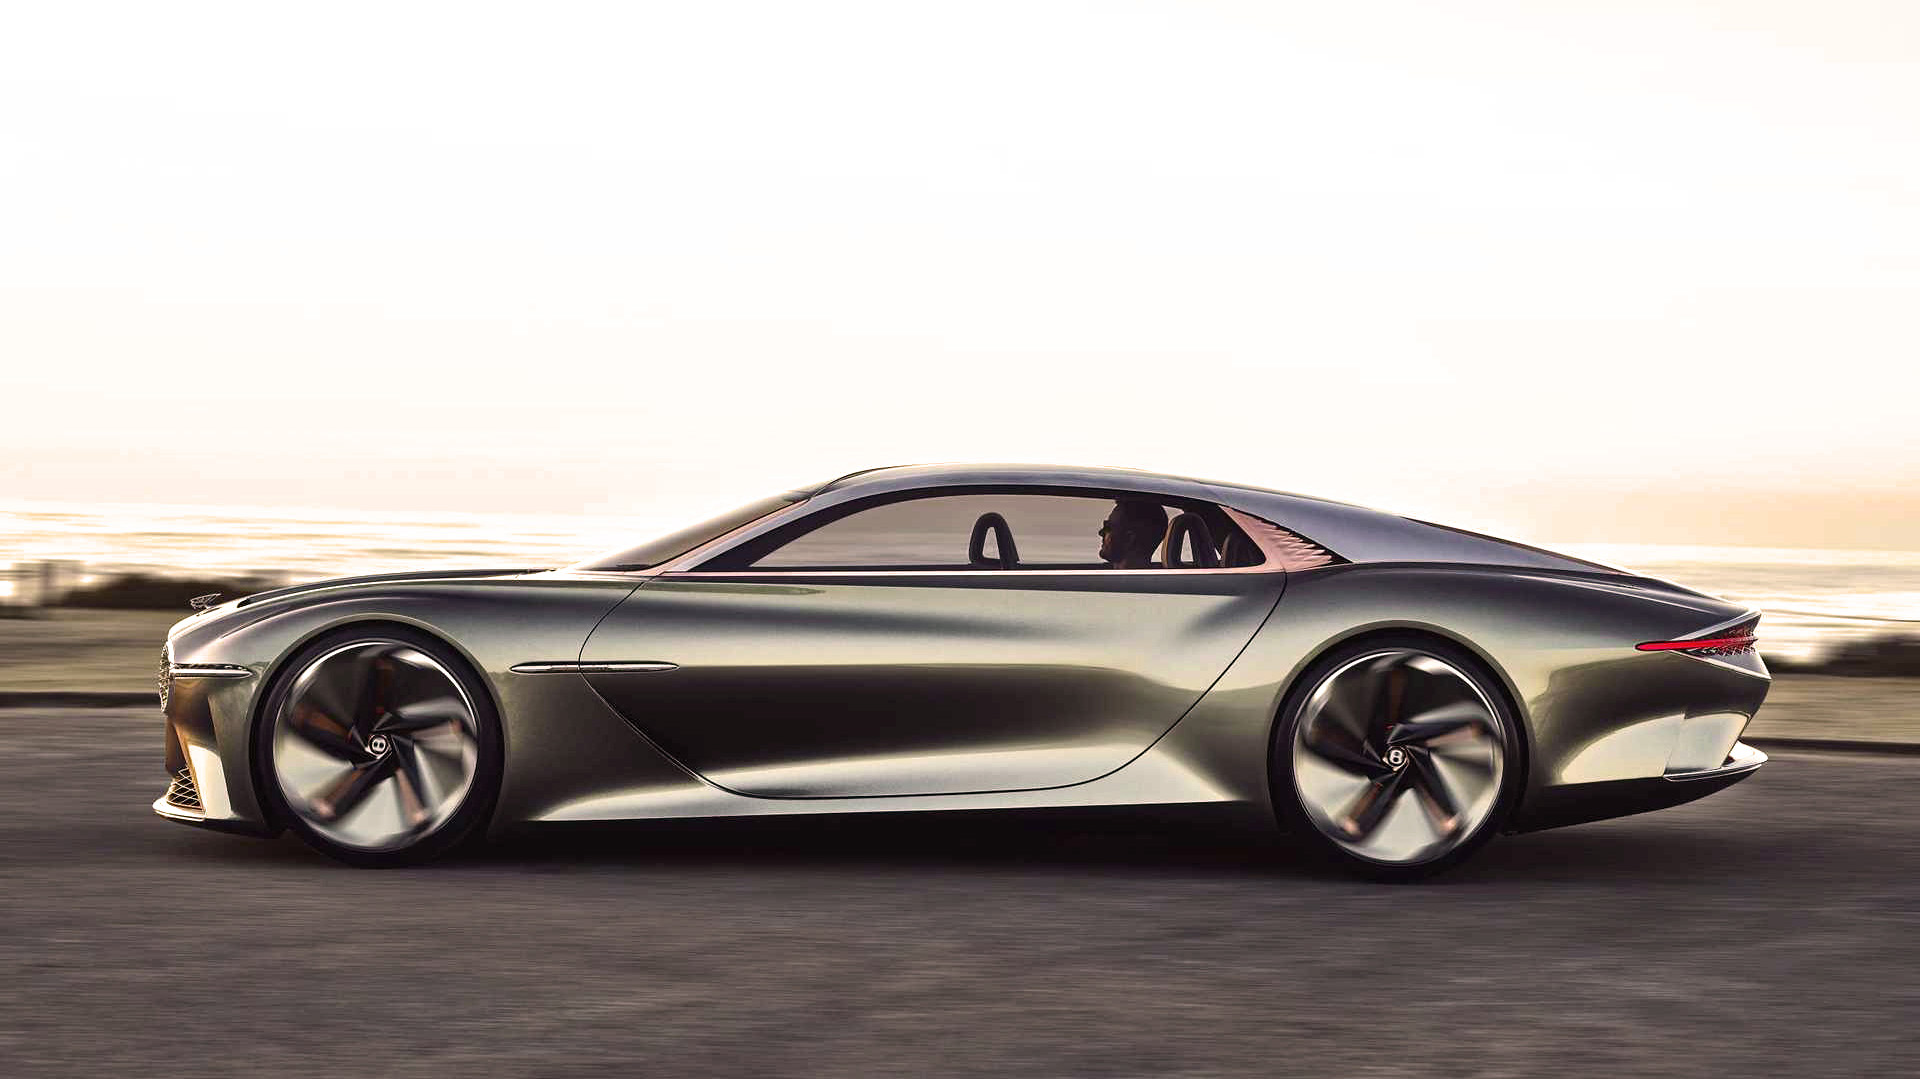 Bentley aspira a convertir su auto eléctrico, en el más rápido de 0 a 100 km/h. Según dicen, tardará sólo 1.5 segundos